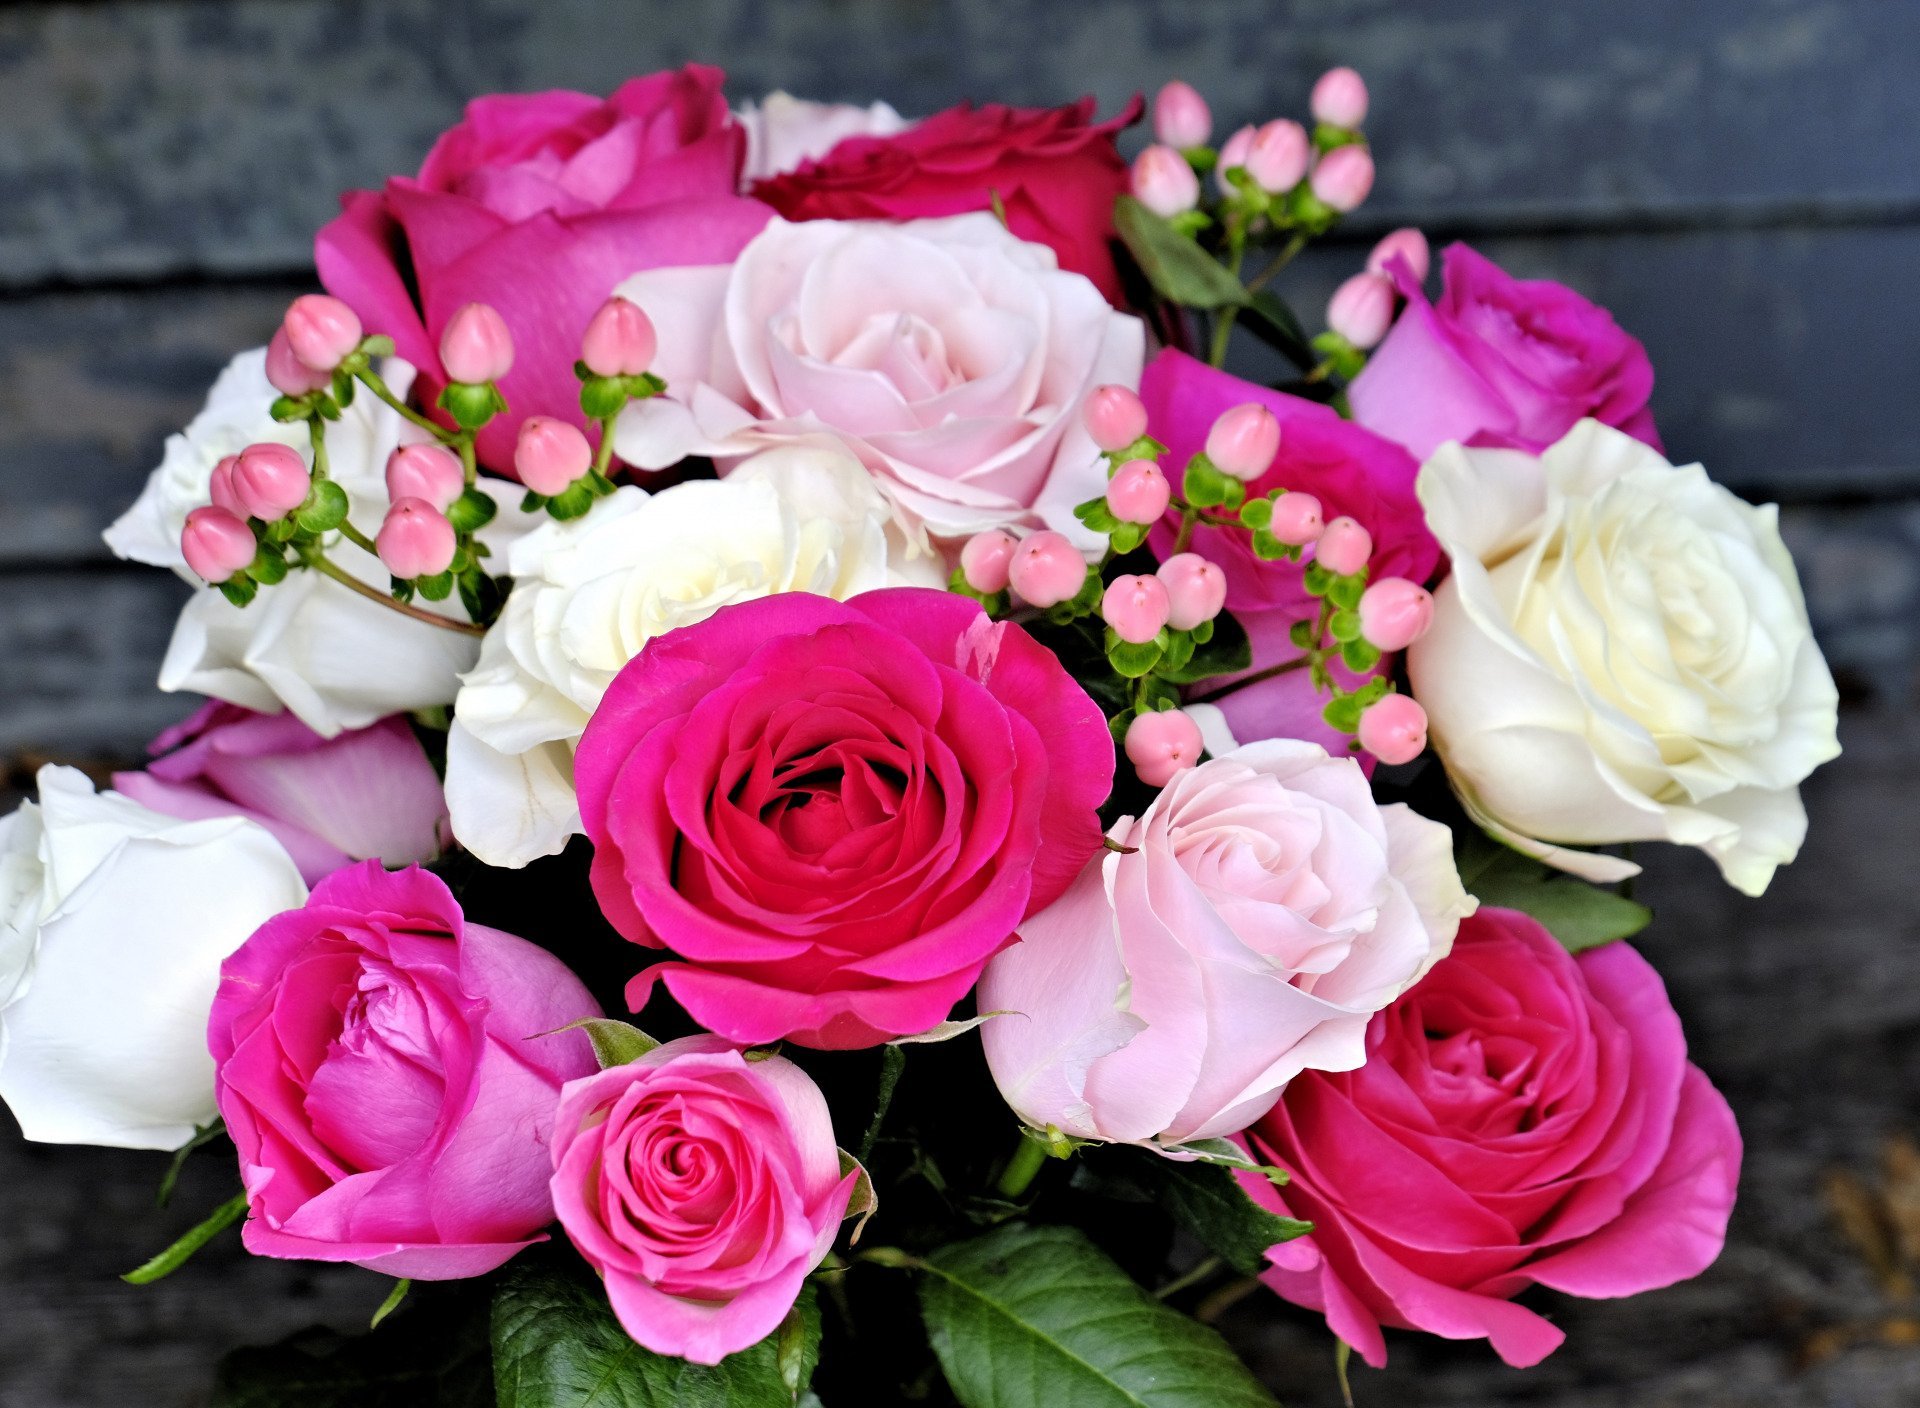 Купить красивые розы. Красивый букет цветов. Шикарный букет цветов. Красивый букет роз. Шикарный букет роз.